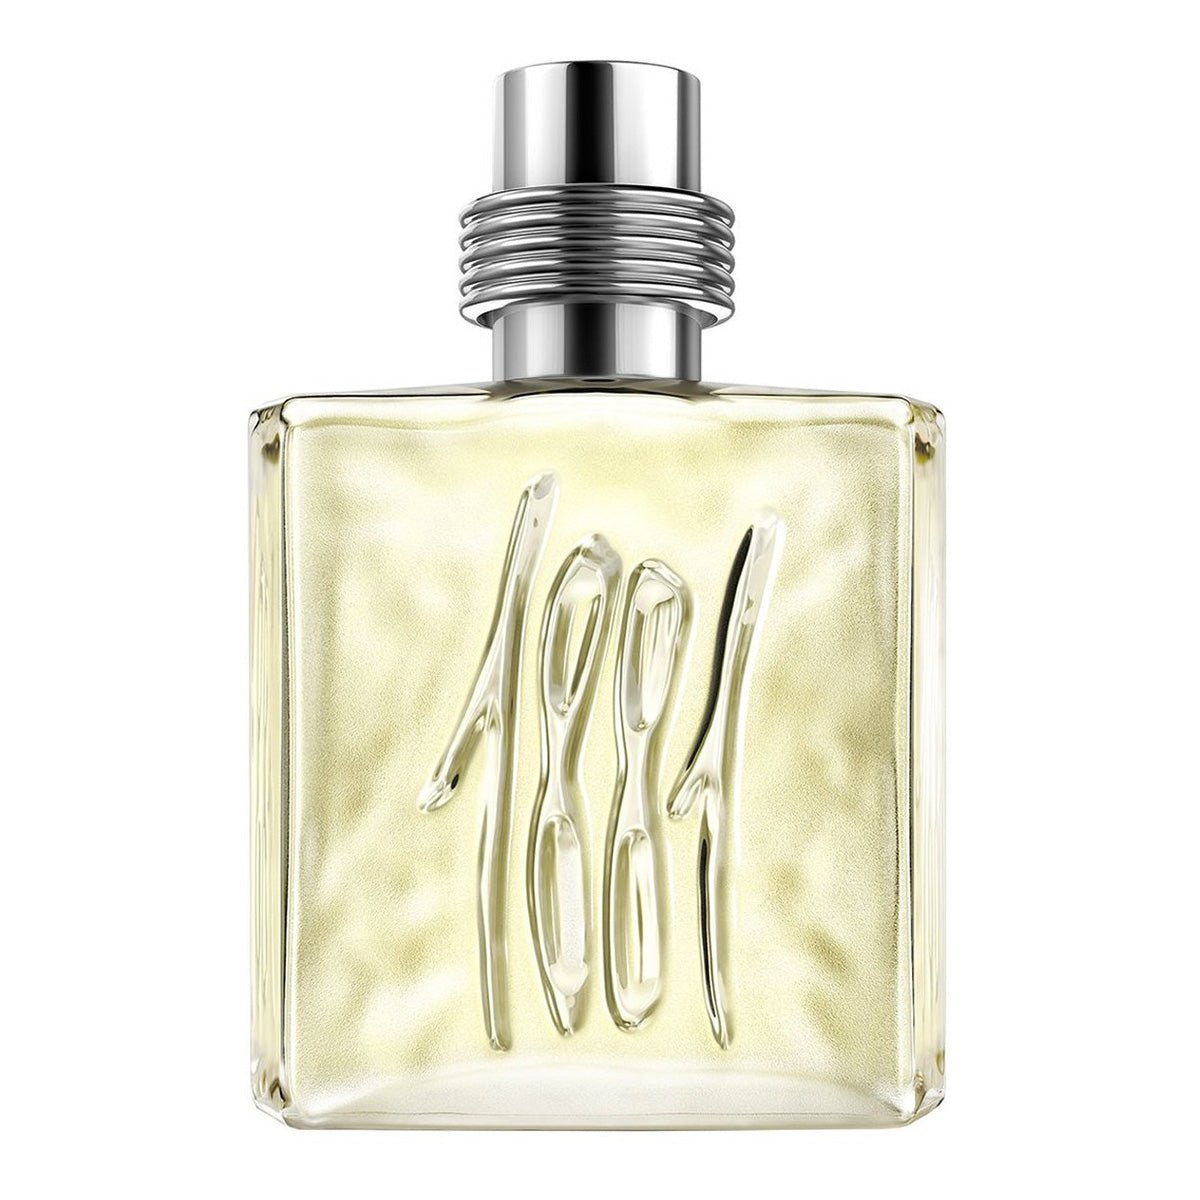 Cerruti 1881 Pour Homme For Men Spray Edt 100ml -Perfume - AllurebeautypkCerruti 1881 Pour Homme For Men Spray Edt 100ml -Perfume